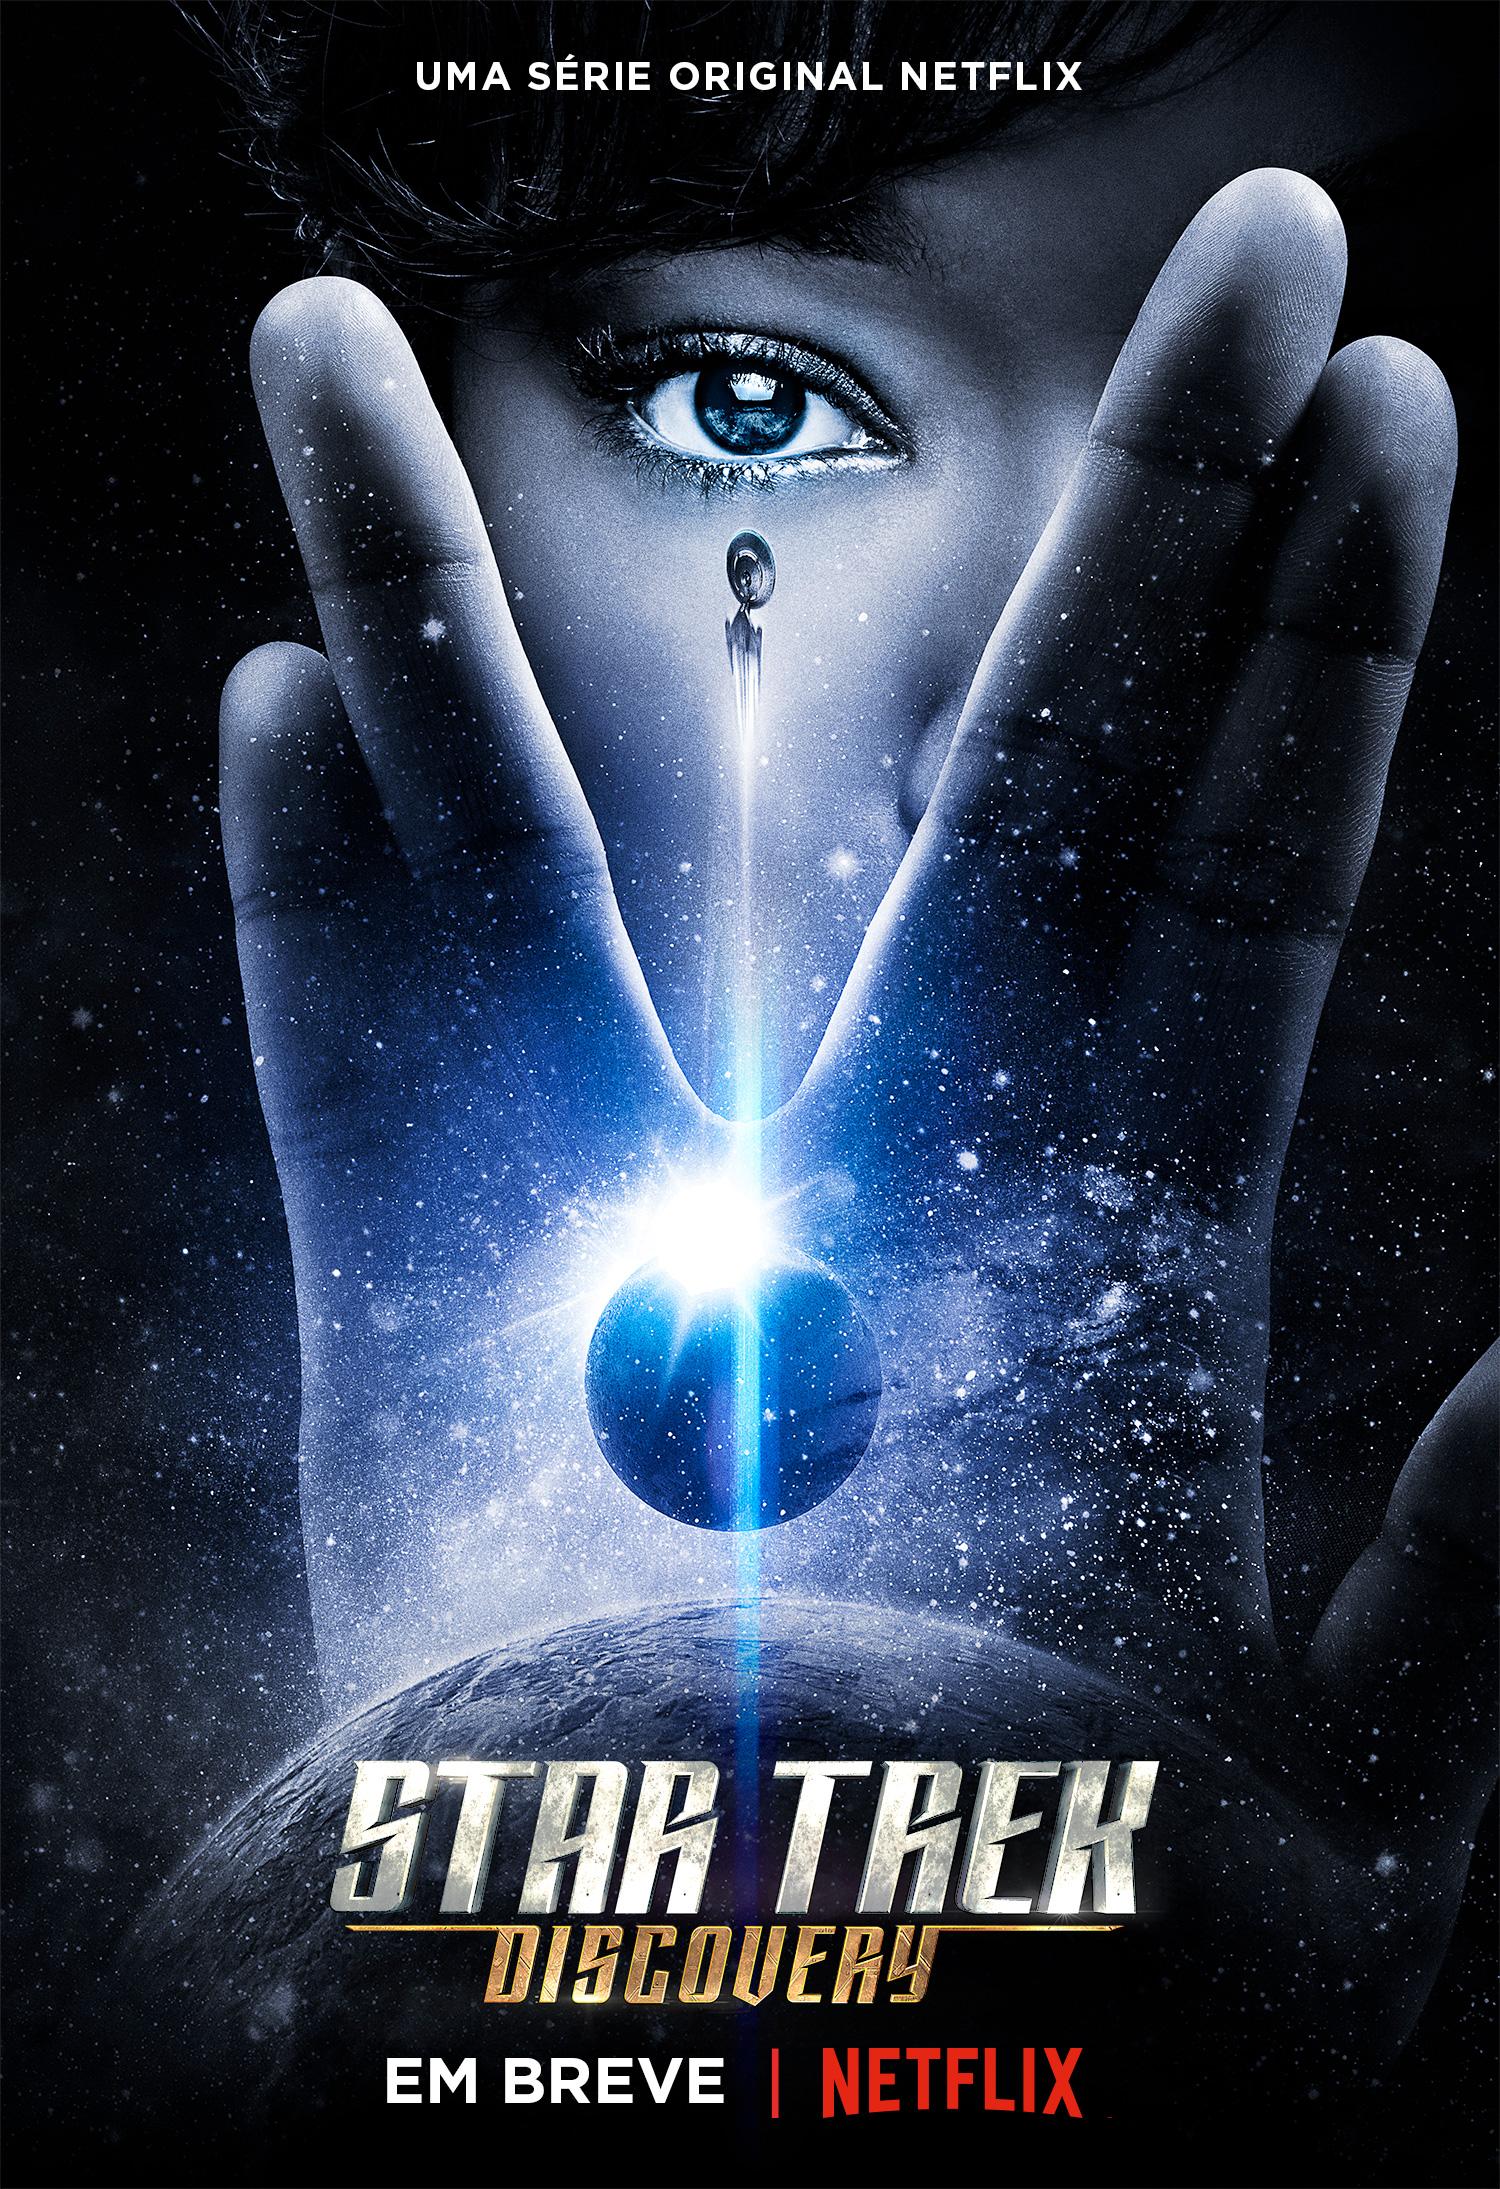 Novo trailer da série de Star Trek é divulgado!